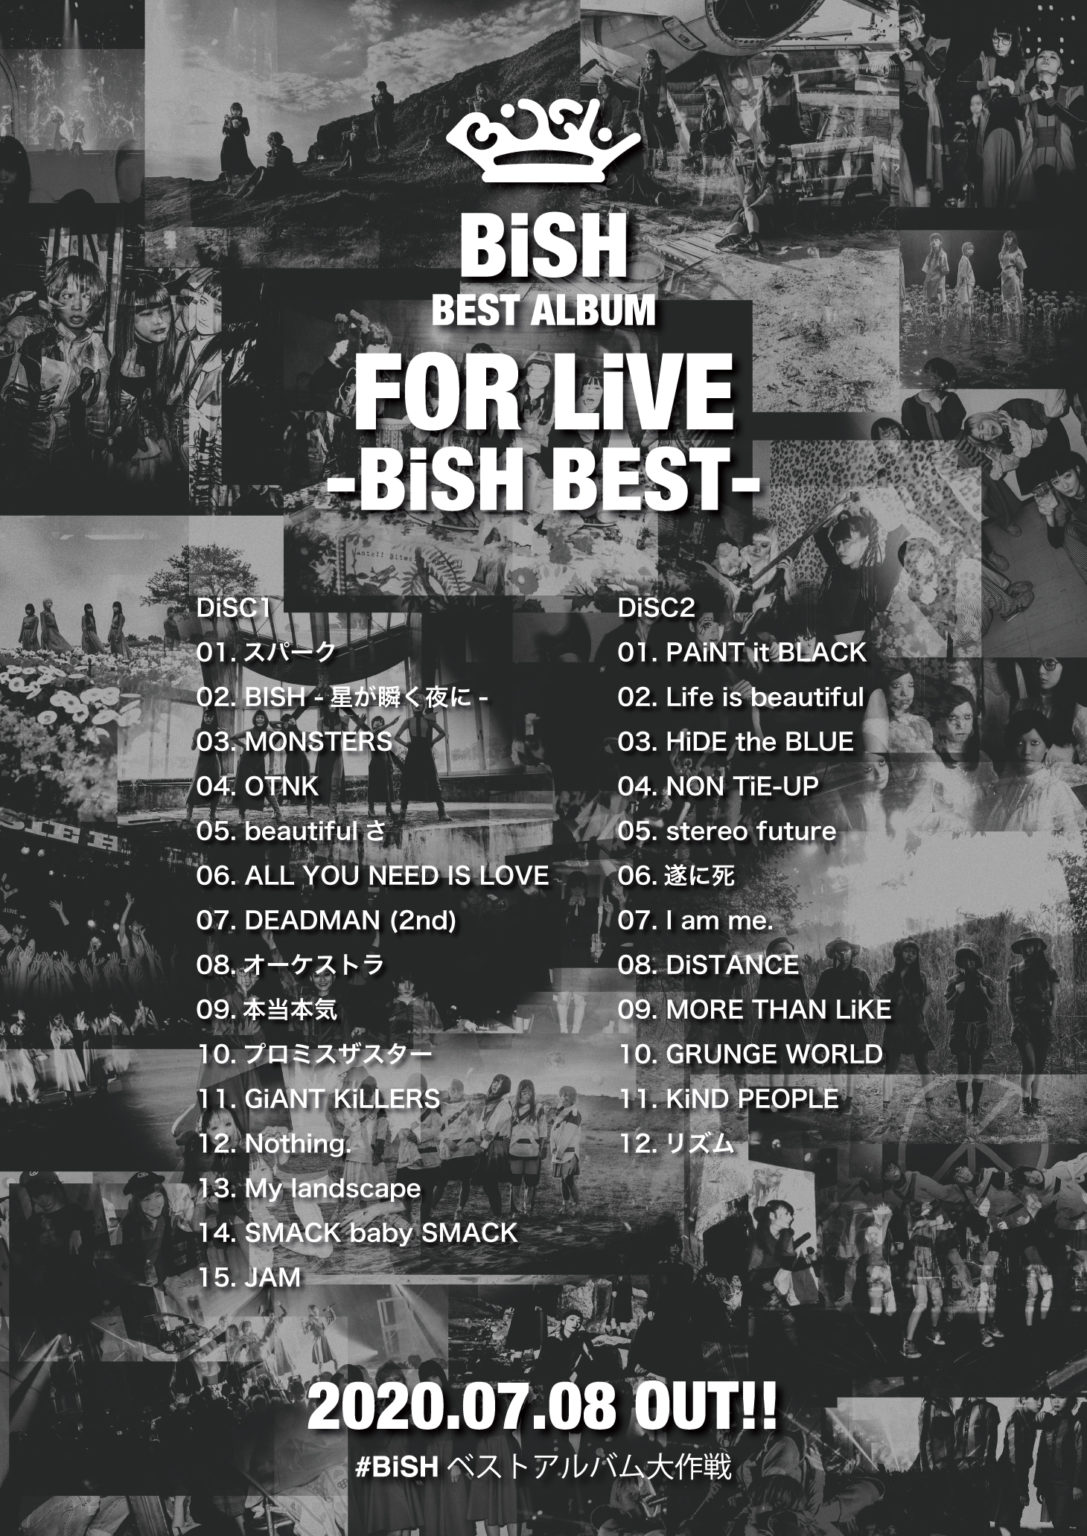 BiSHベストアルバム収録全27曲発表、松山でのフリーライヴ映像も初公開 | StoryWriter